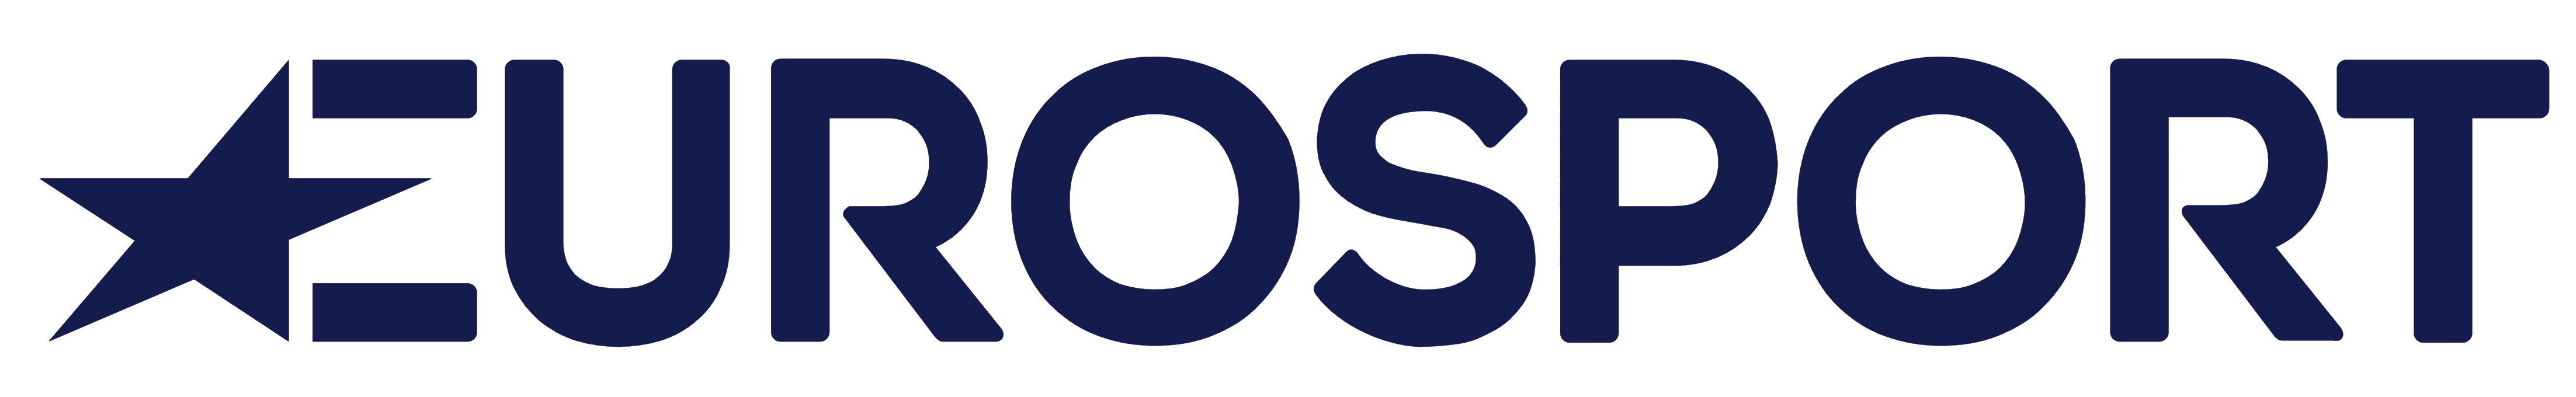 Eurosport logo, logotype